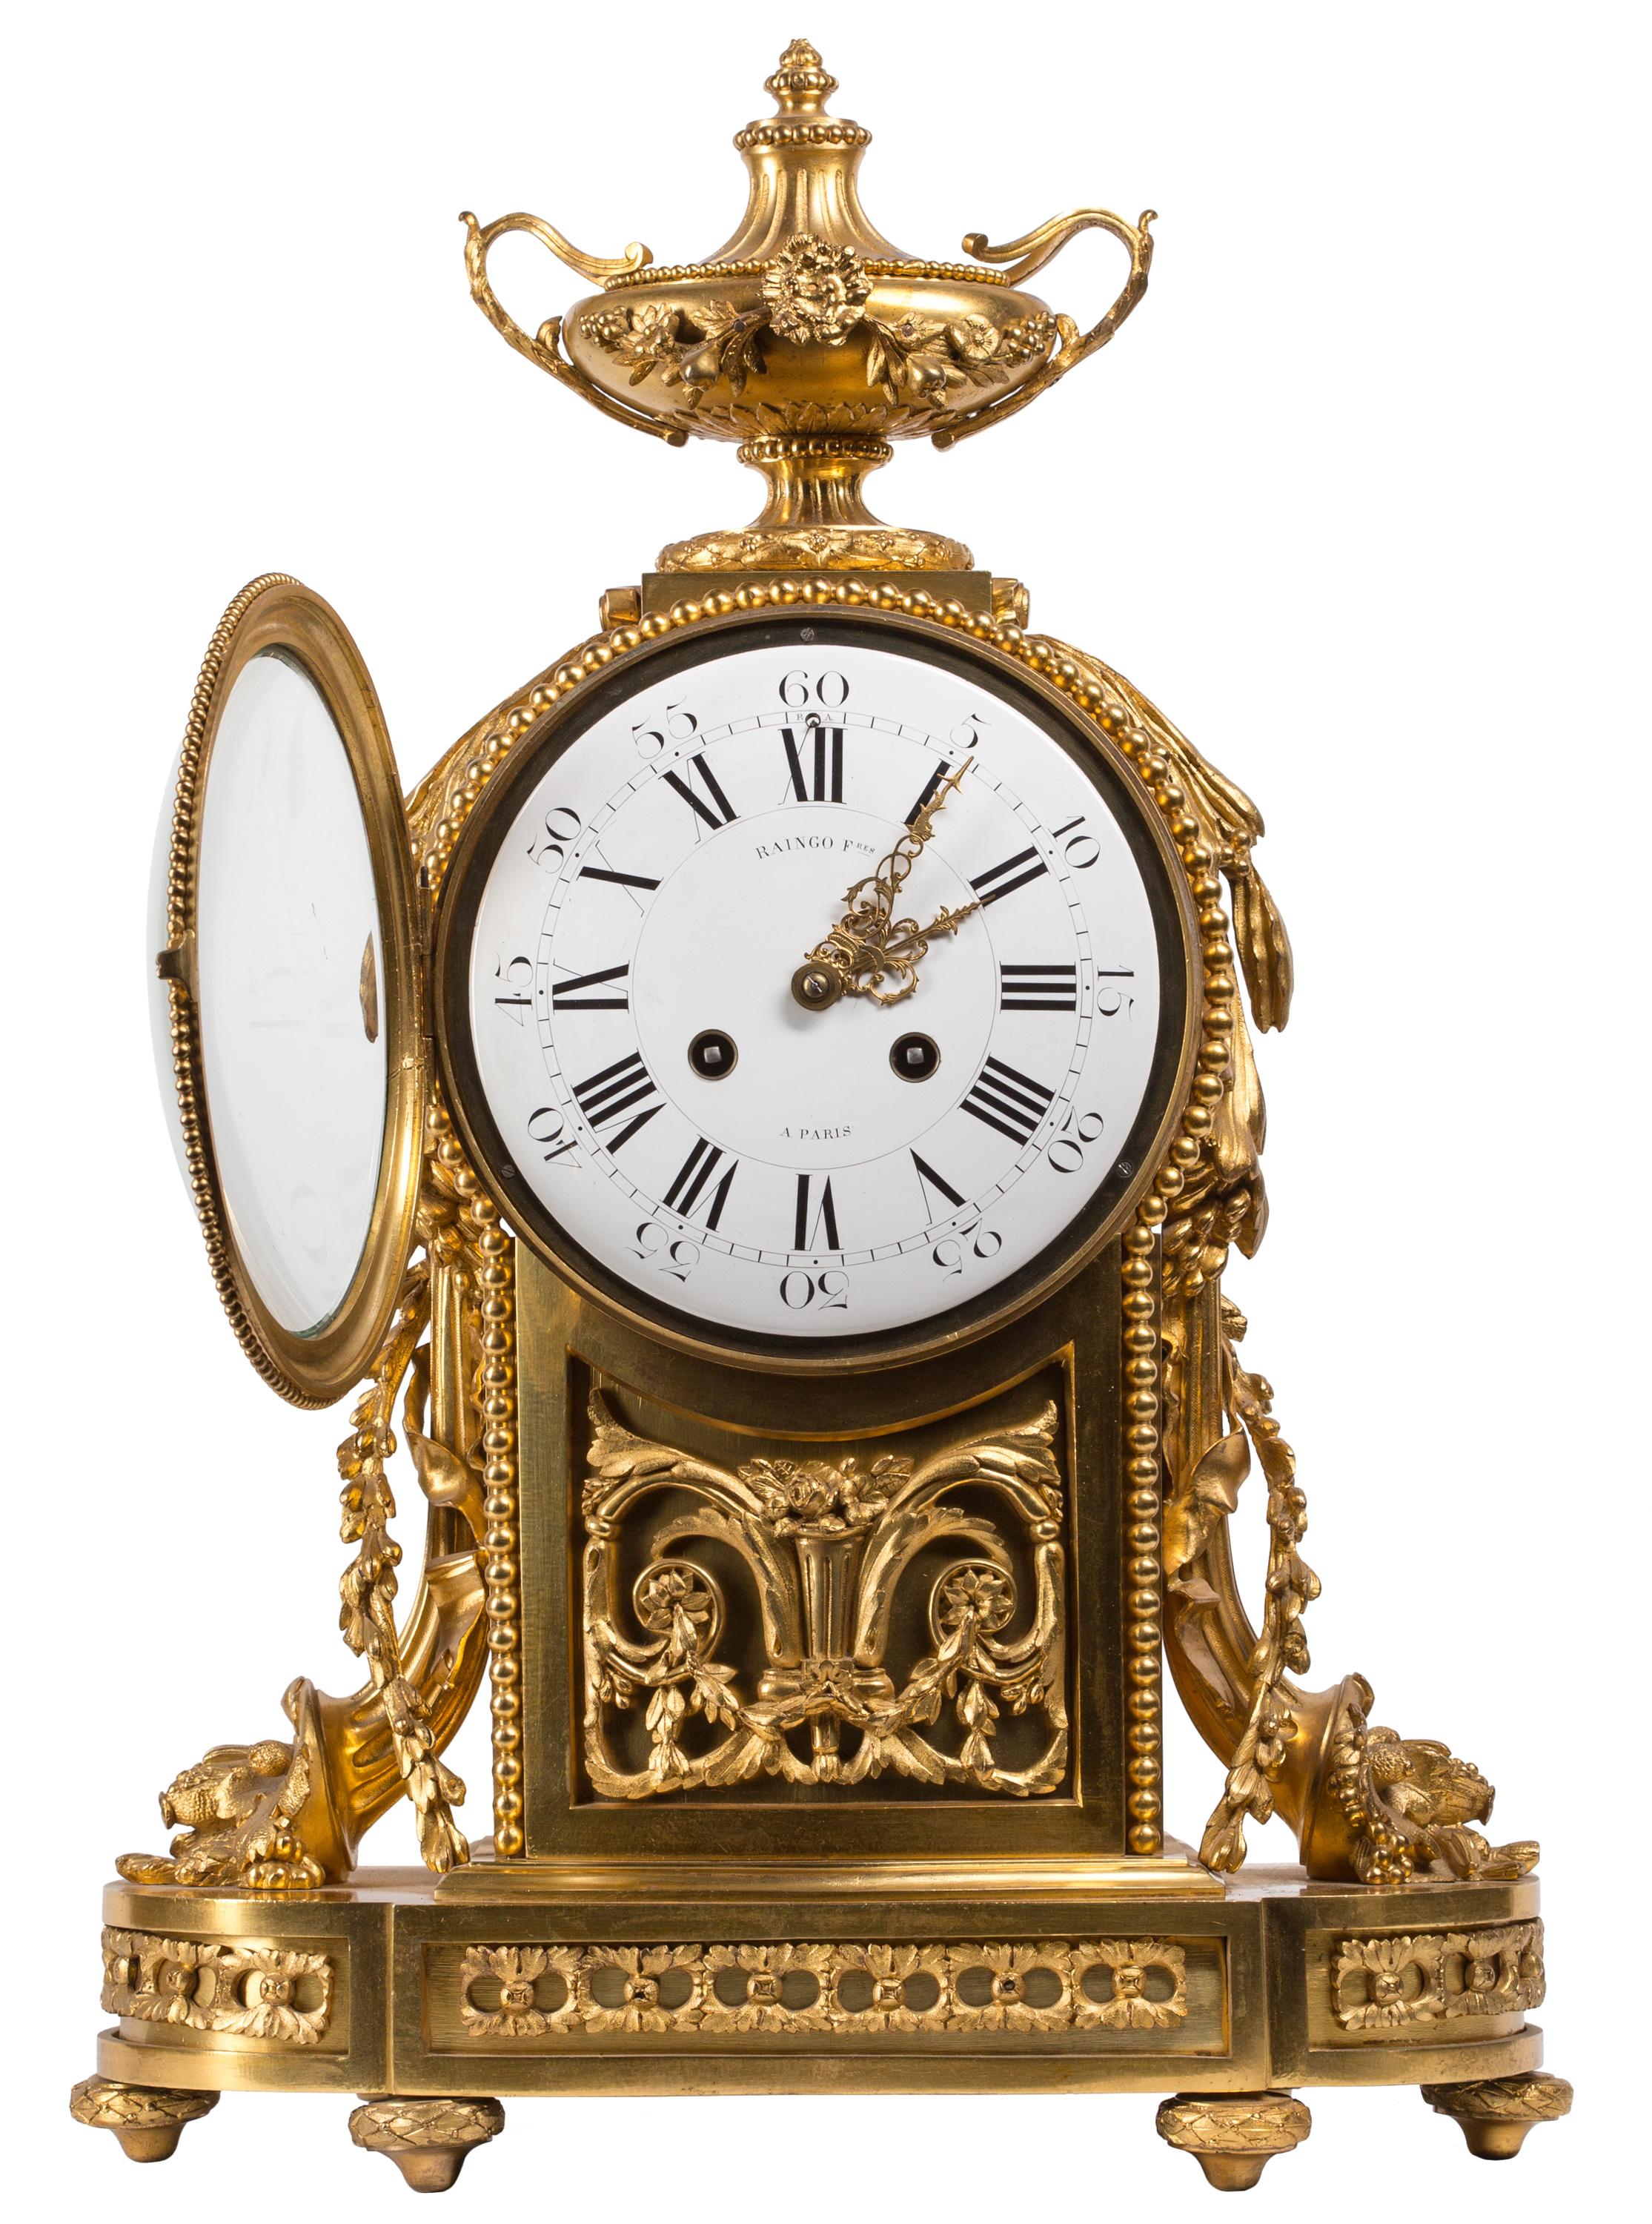 Fondée au début des années 1800, la société Raingo Frères a été l'un des principaux fabricants d'horloges de précision et de dispositifs astronomiques 